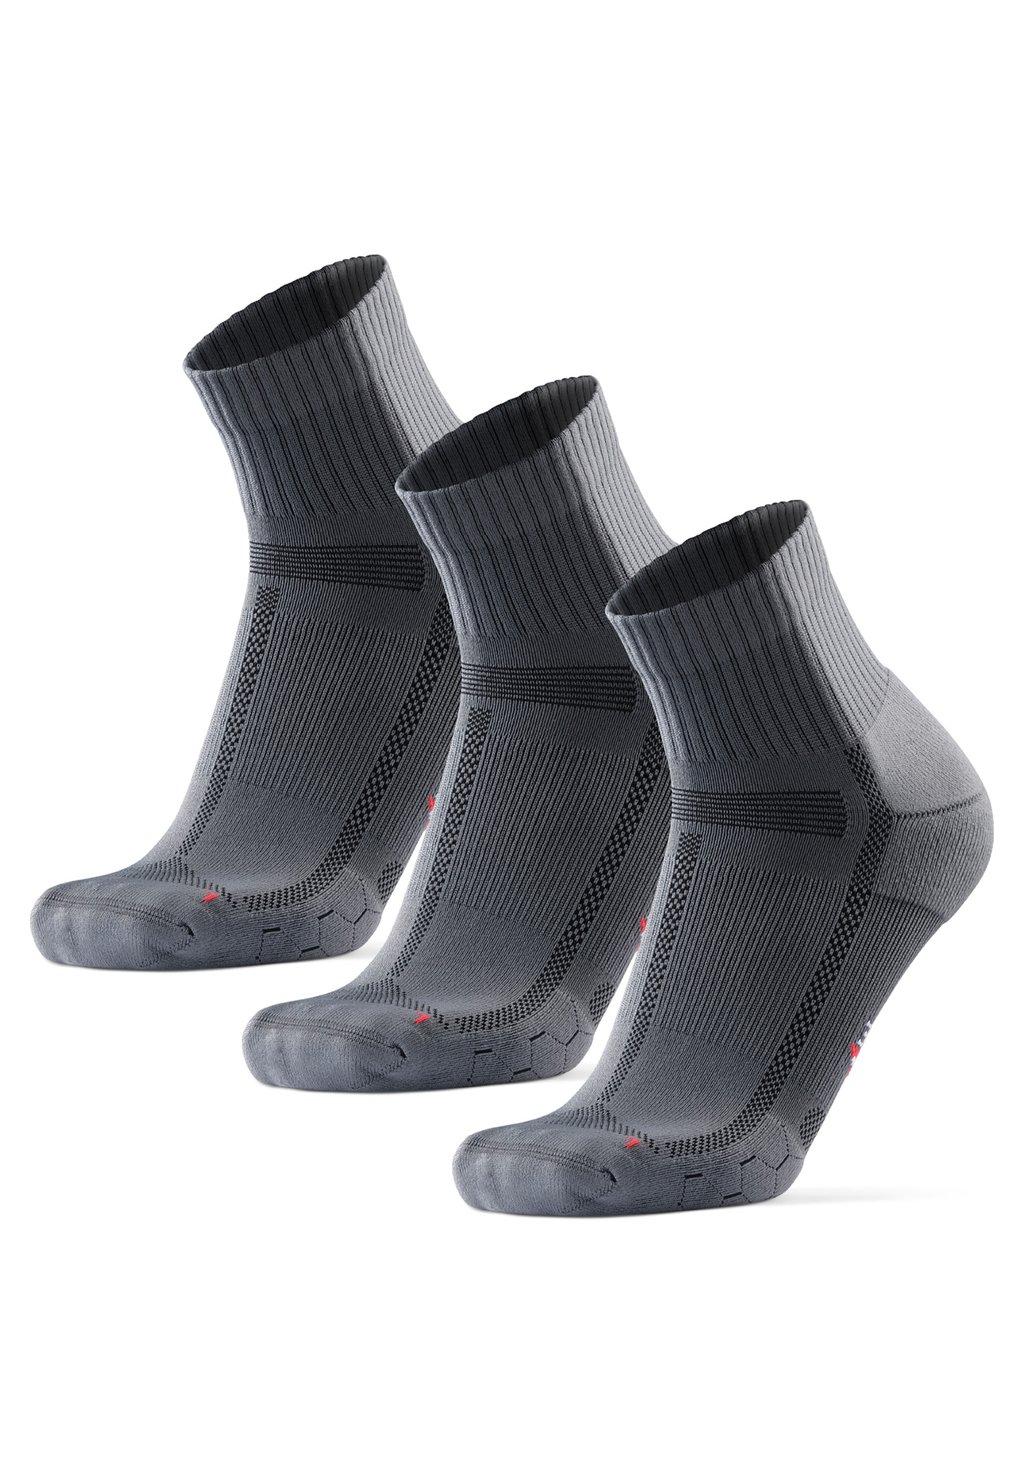 Спортивные носки Danish Endurance, серый/черный